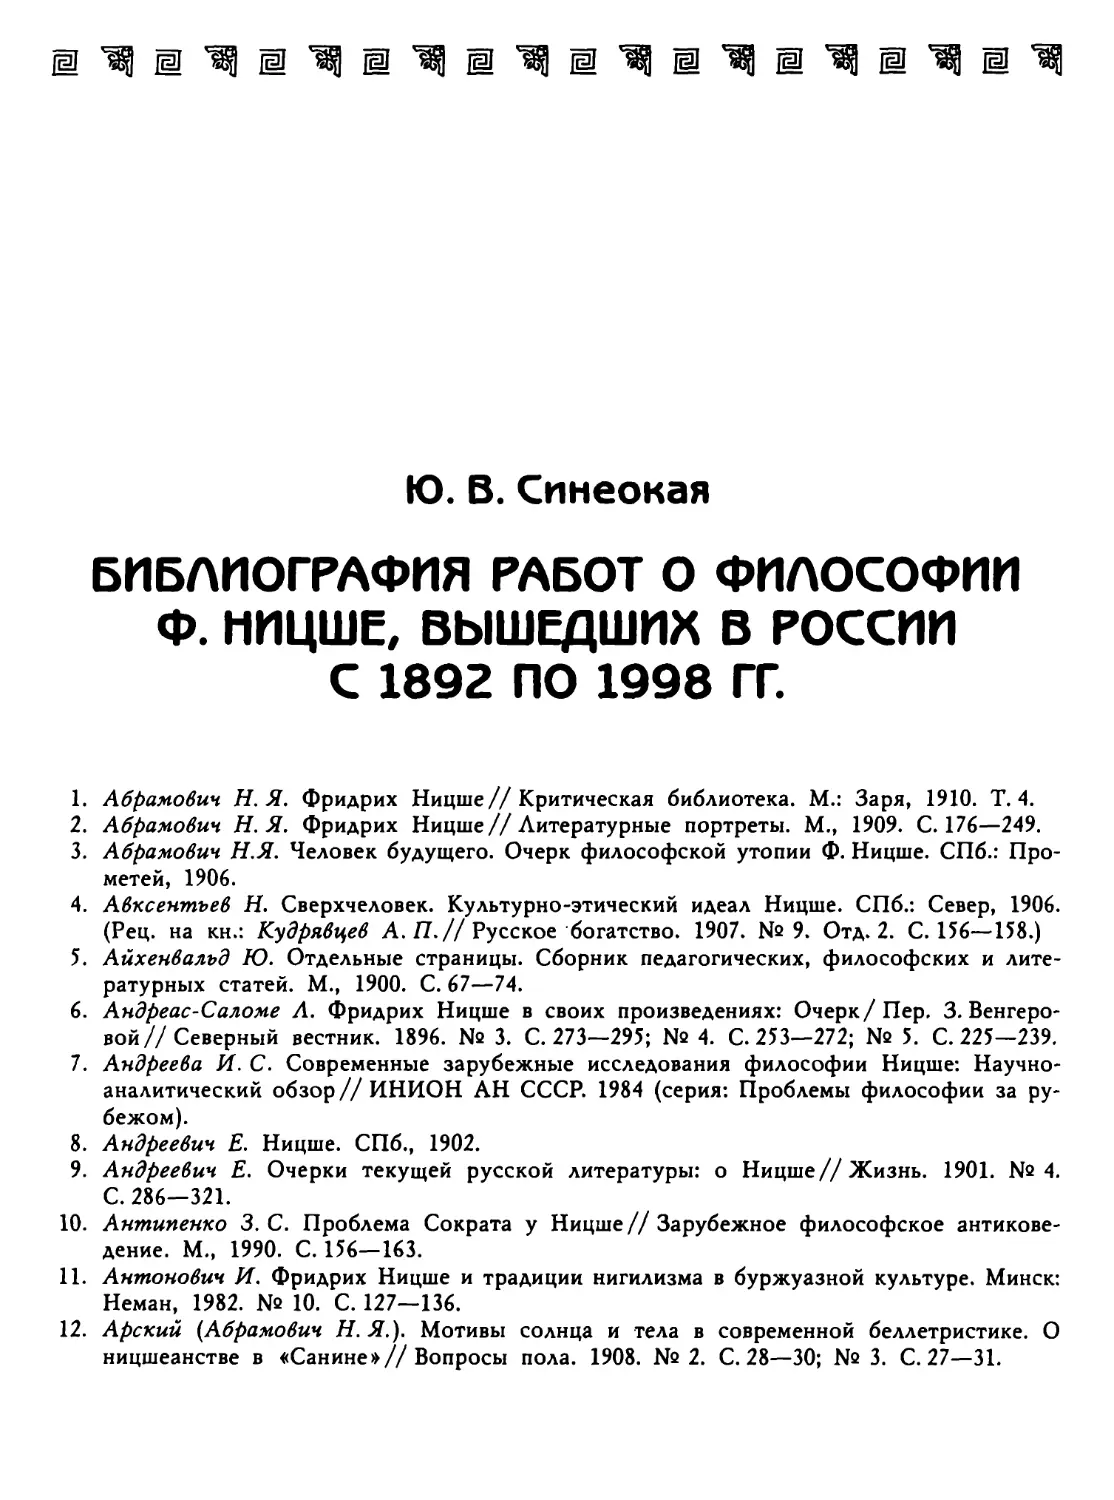 Синеокая Ю. В. Библиография работ о философии Ф. Ницше, вышедших в России с 1892 по 1998 гг.